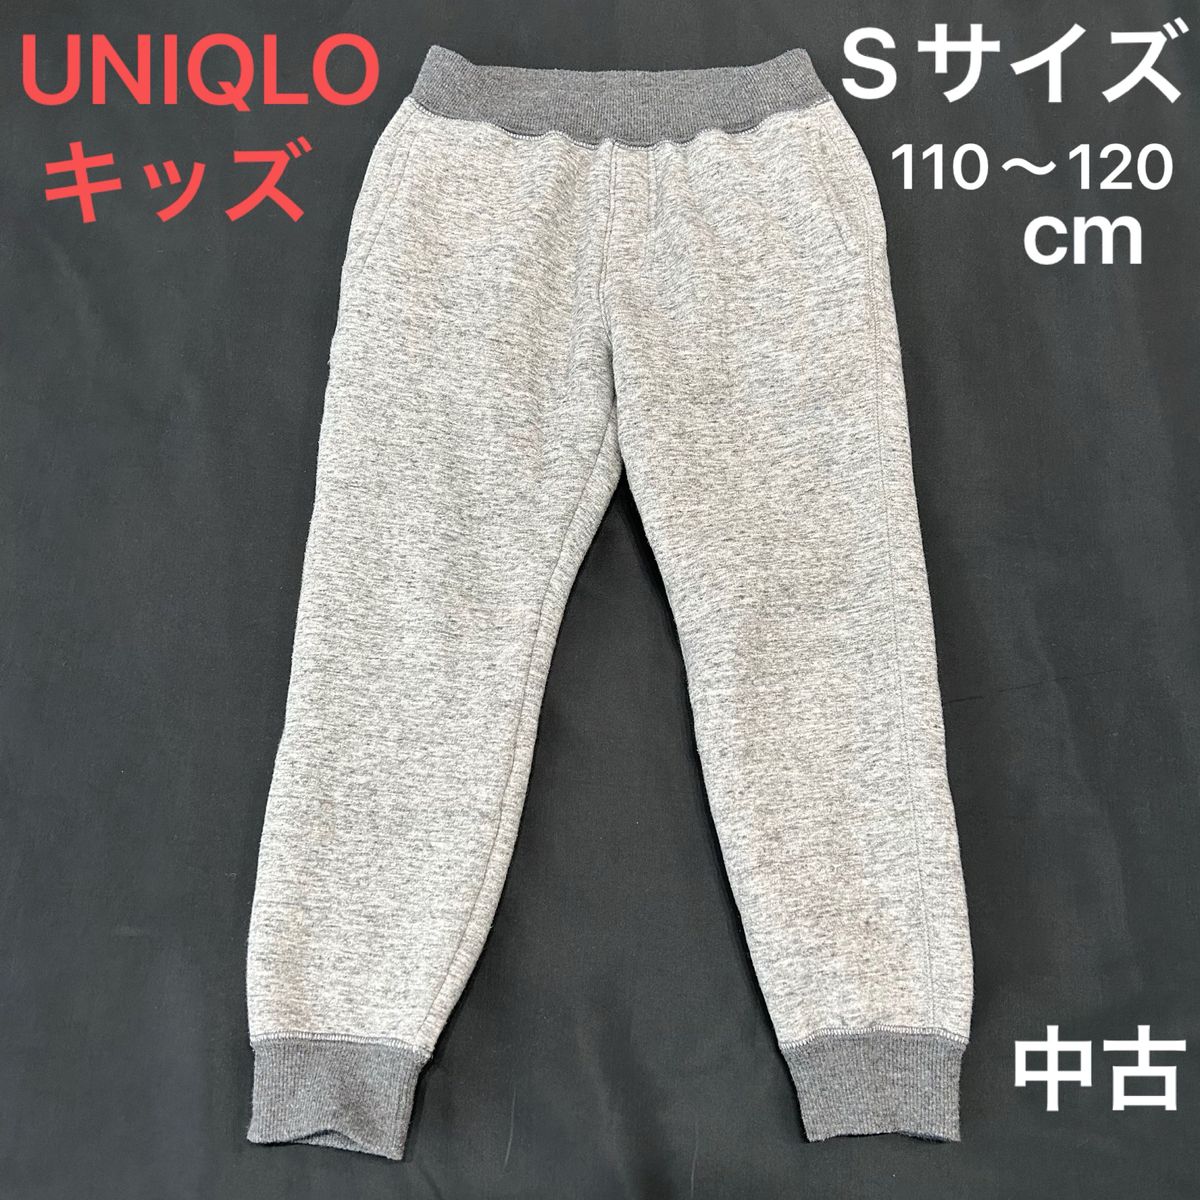 110〜120cm【中古】UNIQLO ユニクロ キッズSサイズ  ボアスウェットパンツ グレー ズボン 男の子 女の子 男女兼用